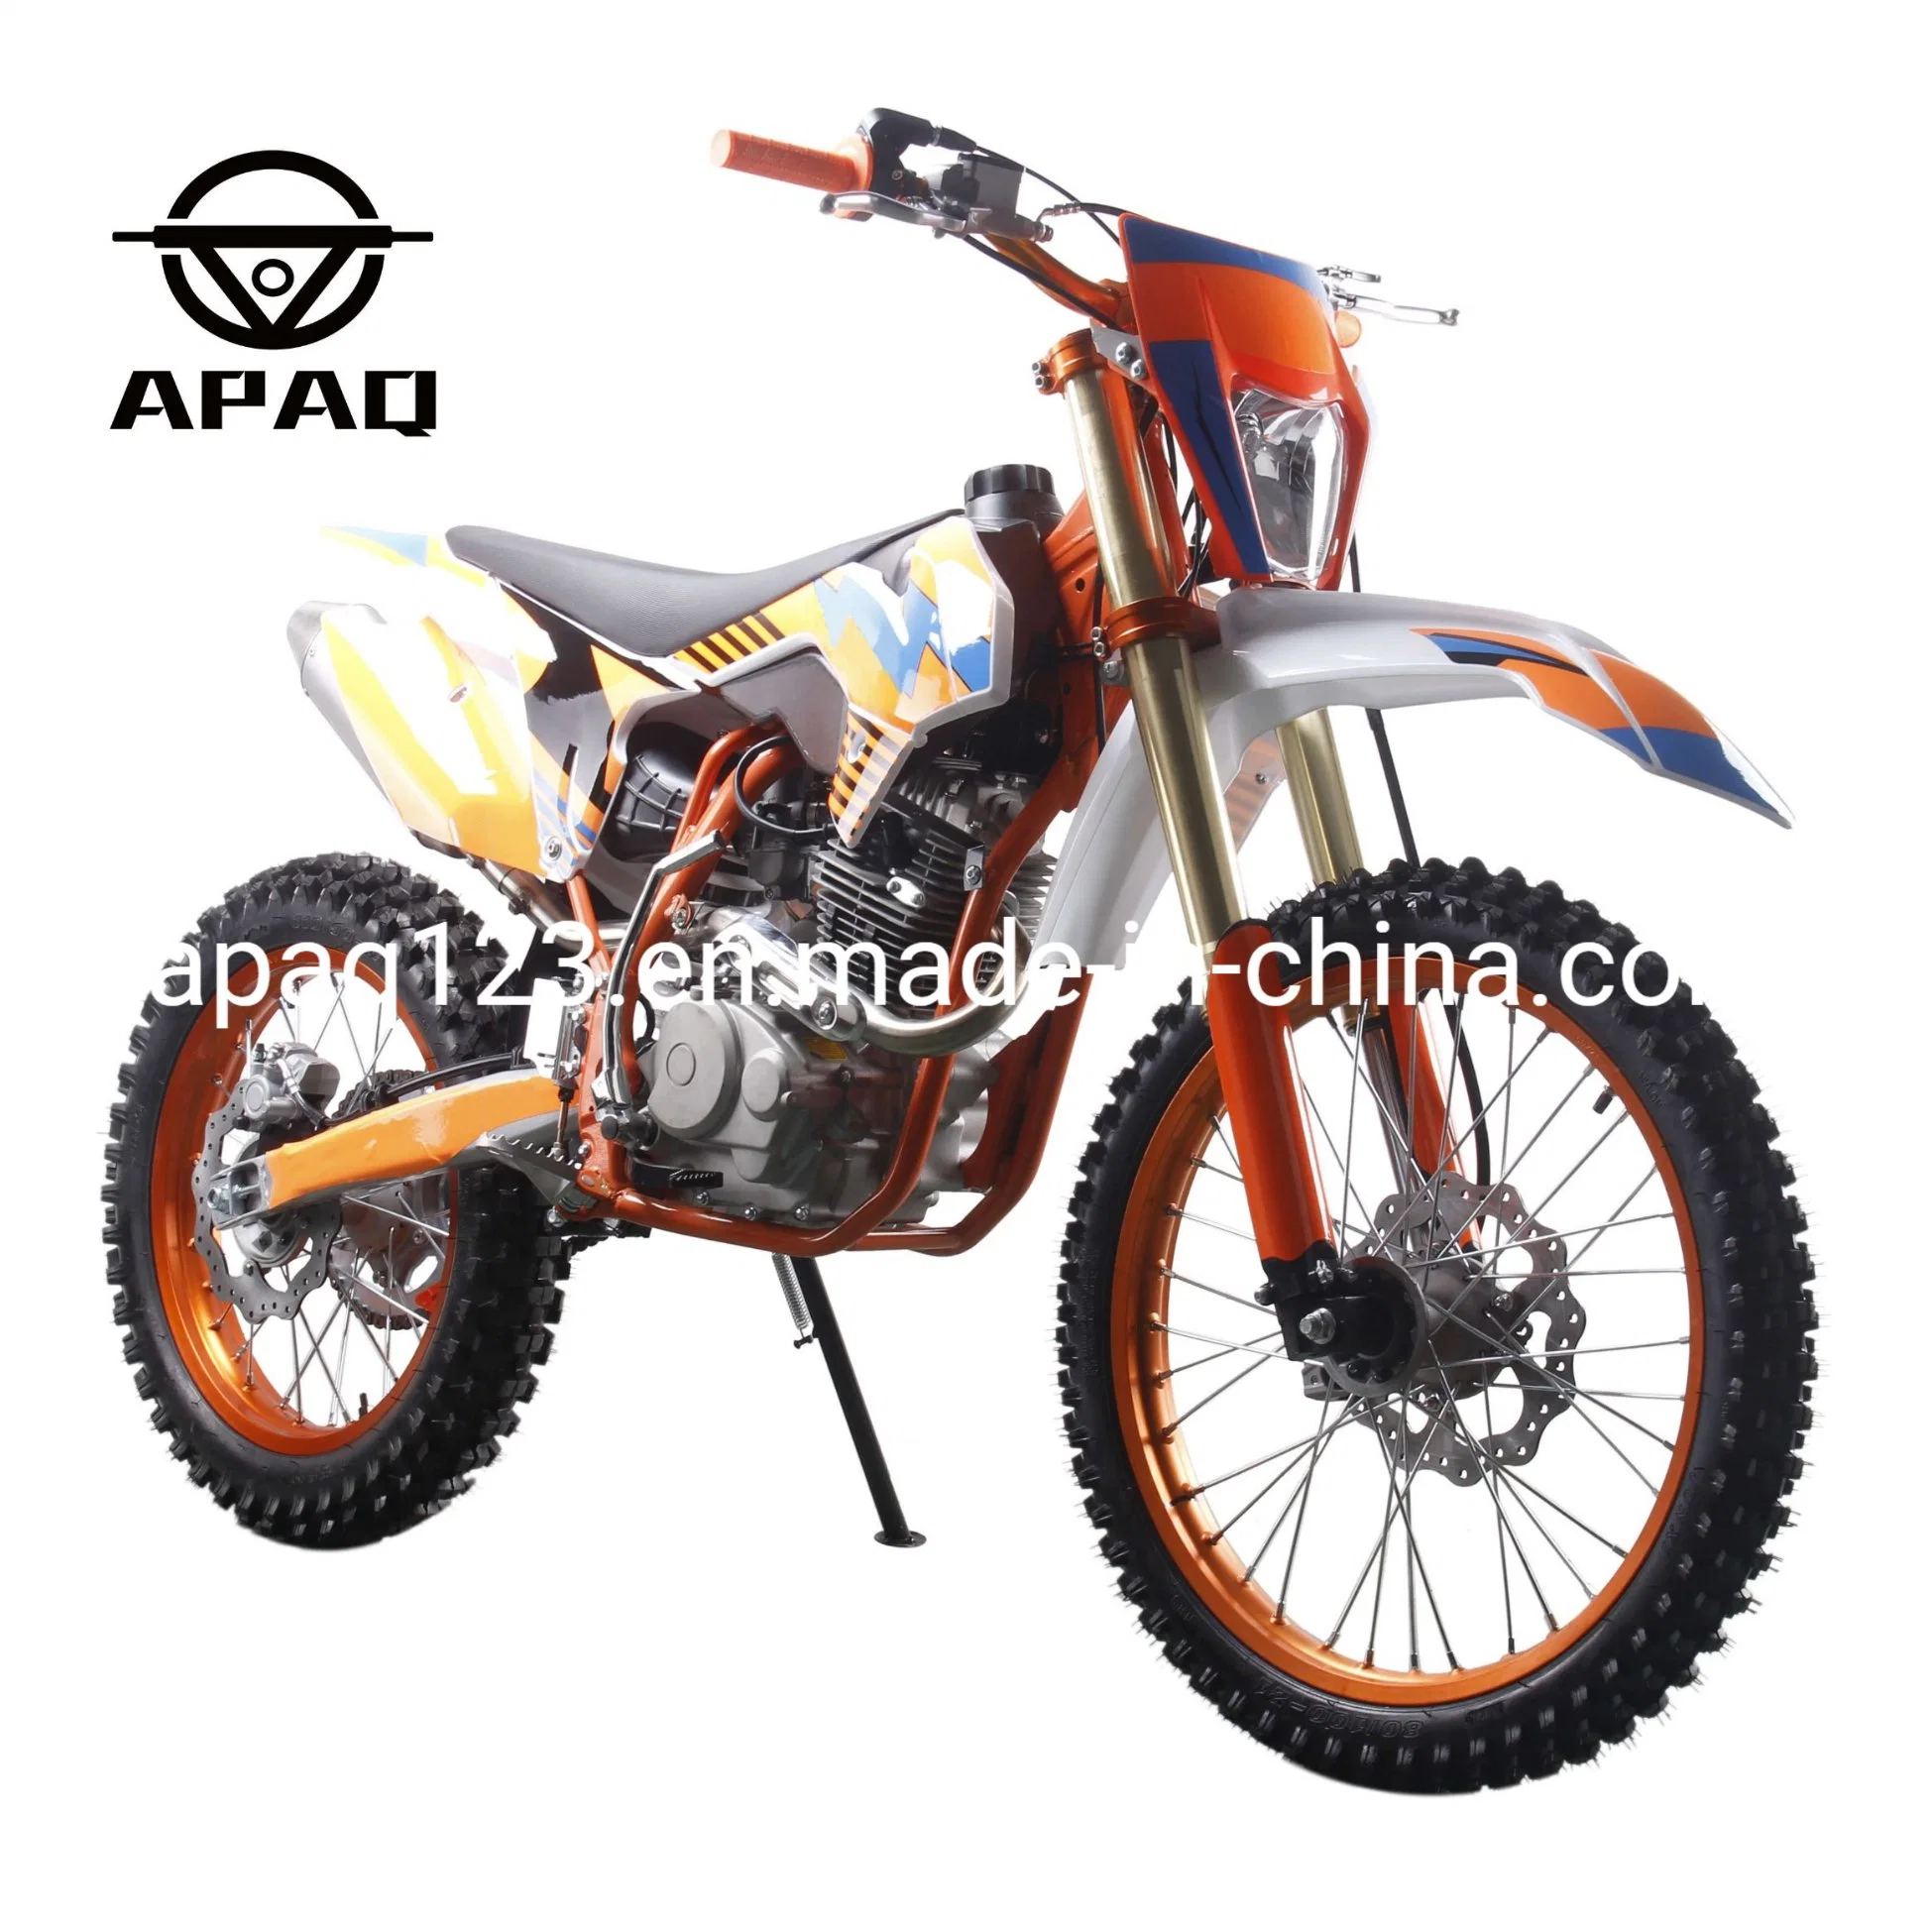 Apaq 300cc мотоцикл грязь на велосипеде по безопасности дорожного и внедорожного Scooters газа для продажи